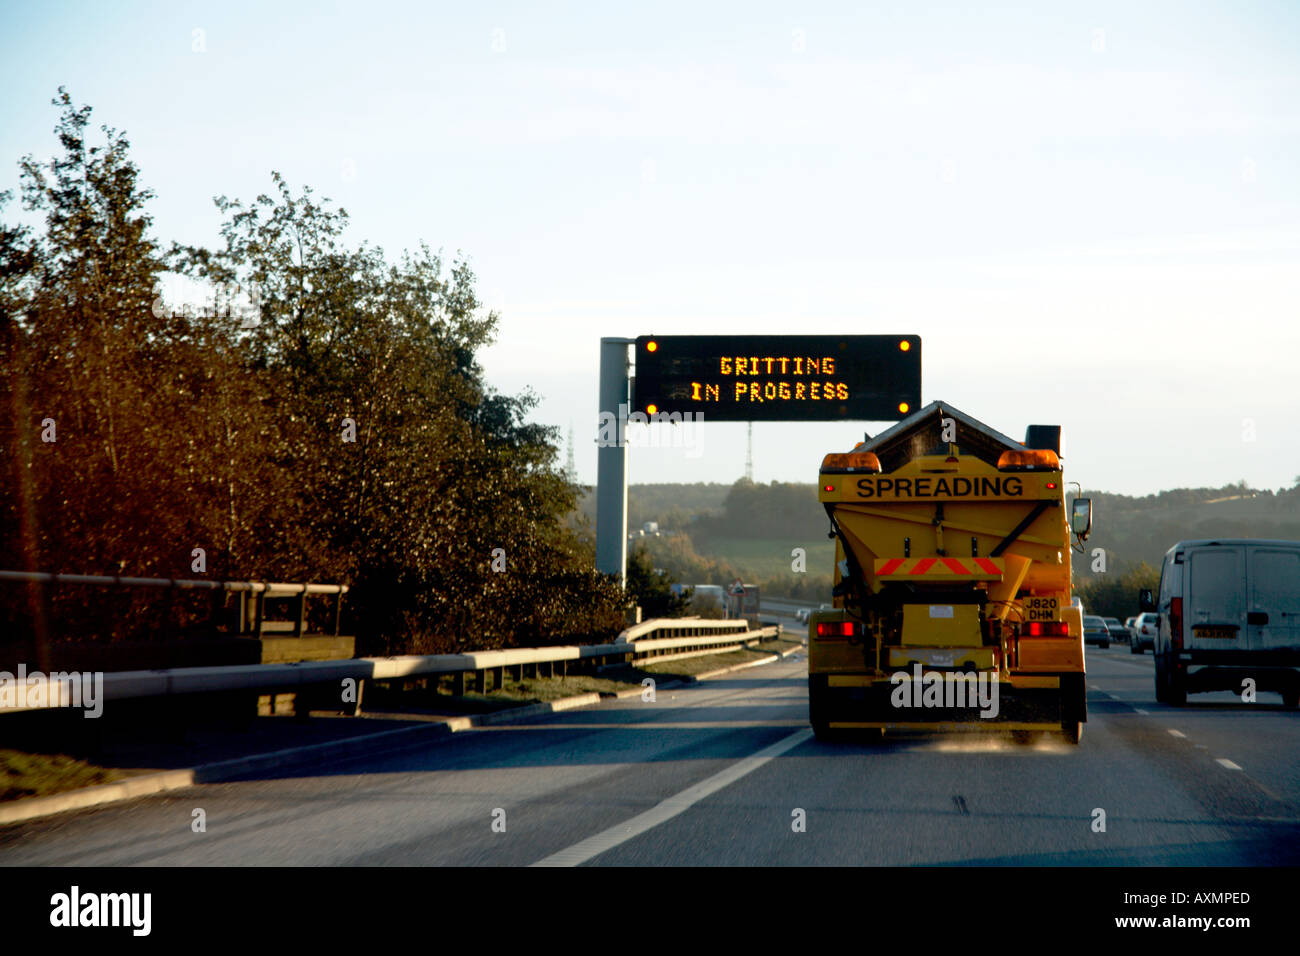 Gritting Lorry on M1 Motorway passing warning matrix sign Stock Photo